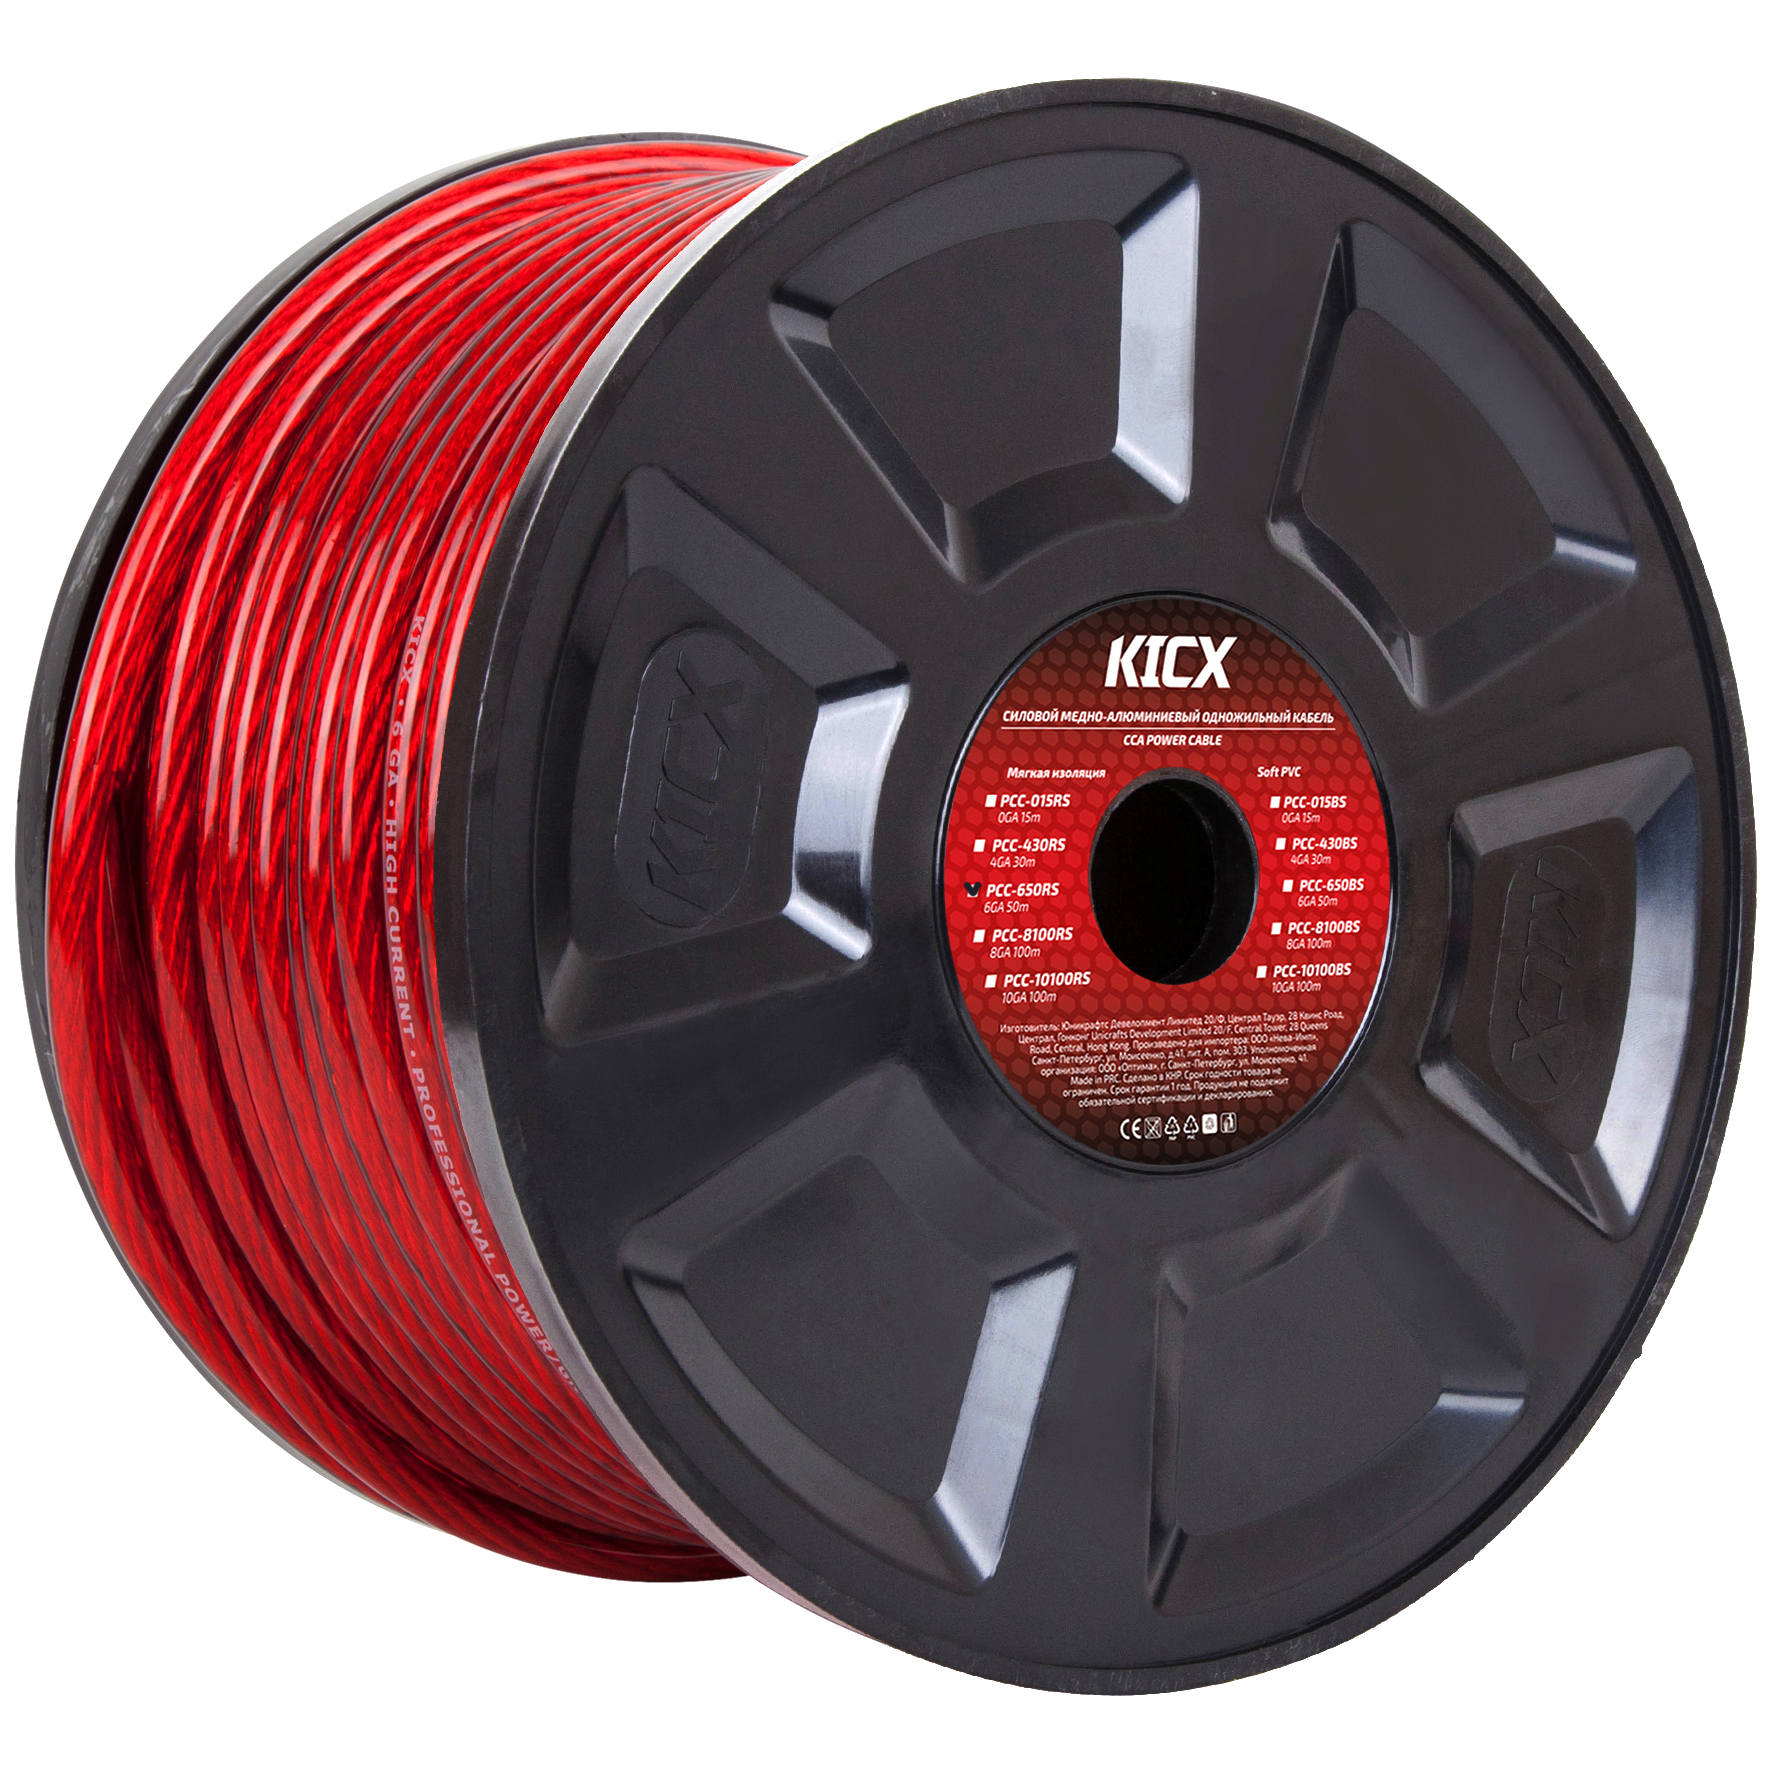 фото Кабель силовой 6ga (13мм) 1м красный kicx pcc 650rs